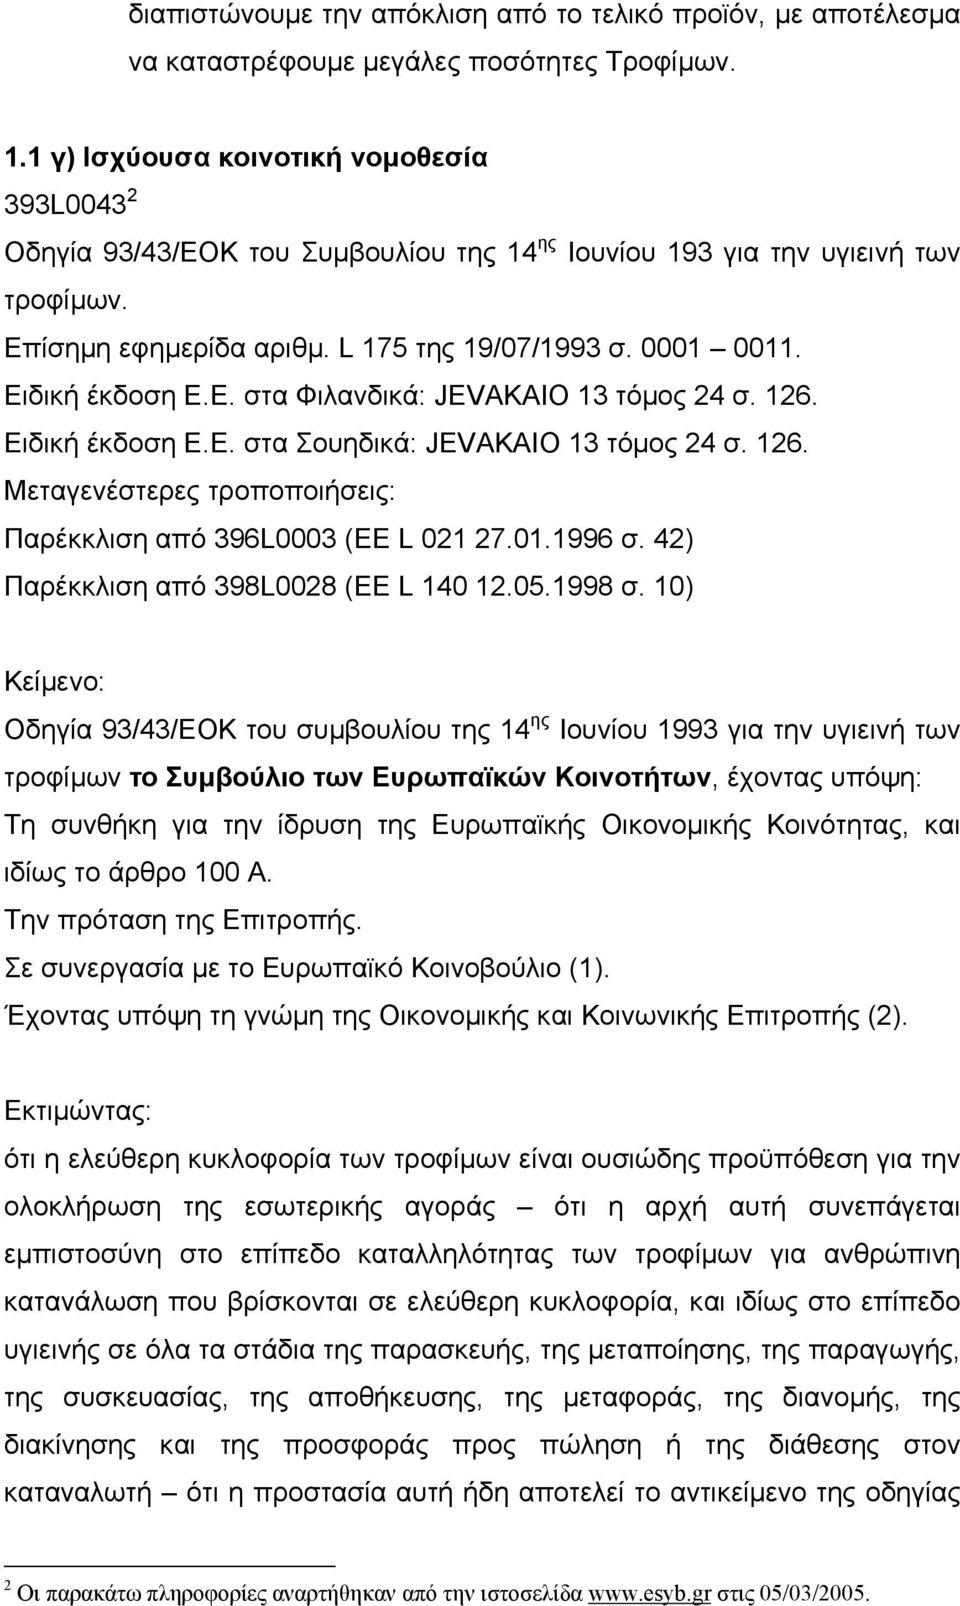 Ειδική έκδοση Ε.Ε. στα Φιλανδικά: JEVAKAIO 13 τόµος 24 σ. 126. Ειδική έκδοση Ε.Ε. στα Σουηδικά: JEVAKAIO 13 τόµος 24 σ. 126. Μεταγενέστερες τροποποιήσεις: Παρέκκλιση από 396L0003 (EE L 021 27.01.